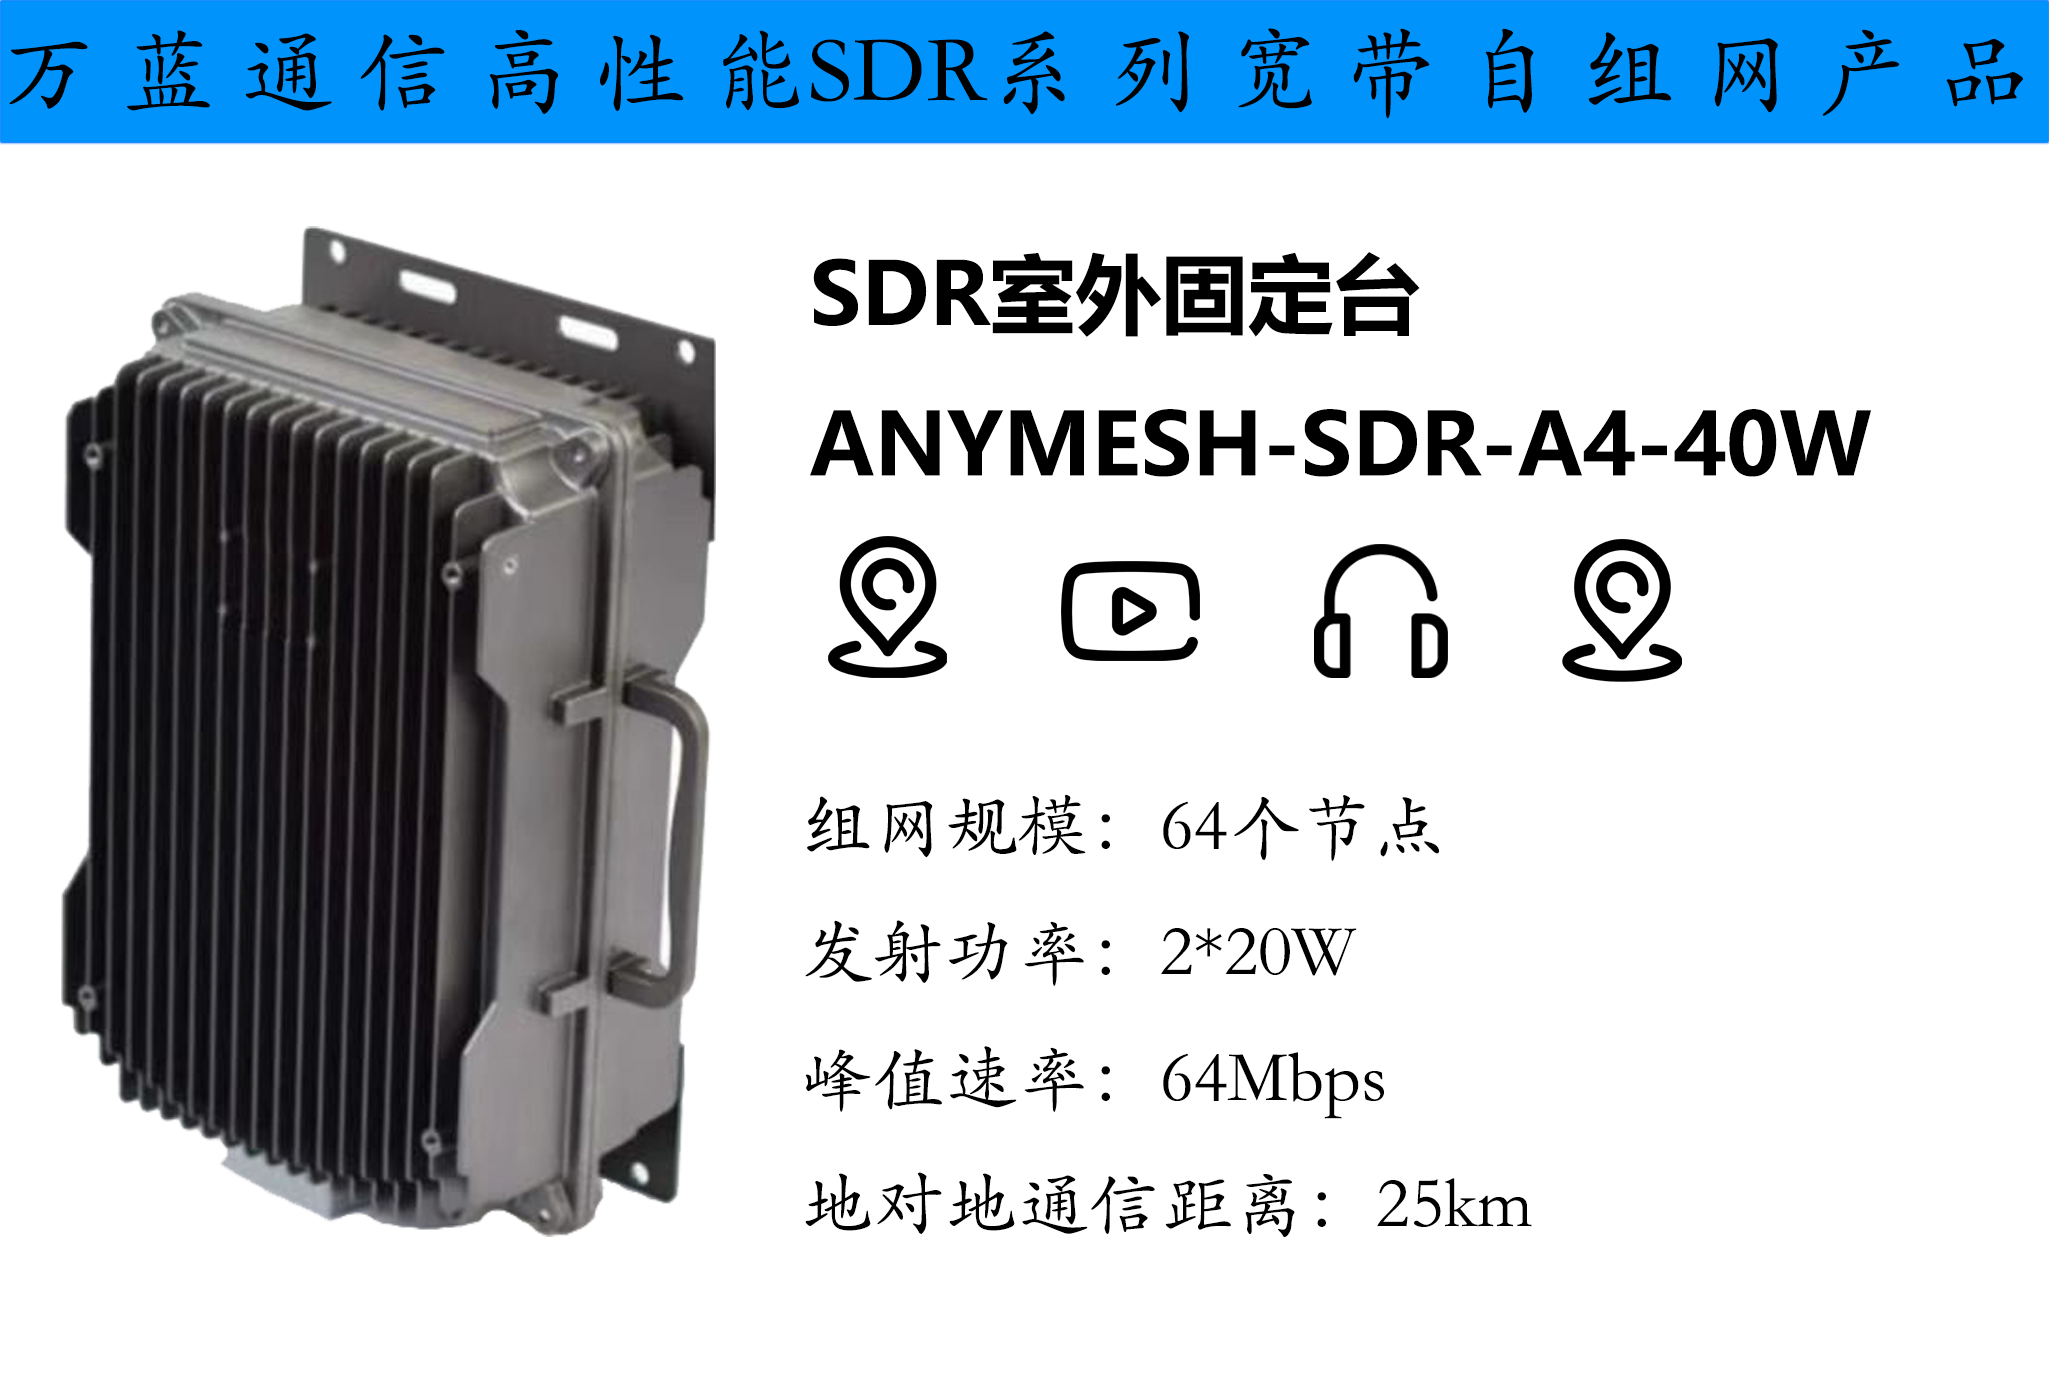 ANYMESH-SDR-A4-40W室外基站型自组网设备 自组